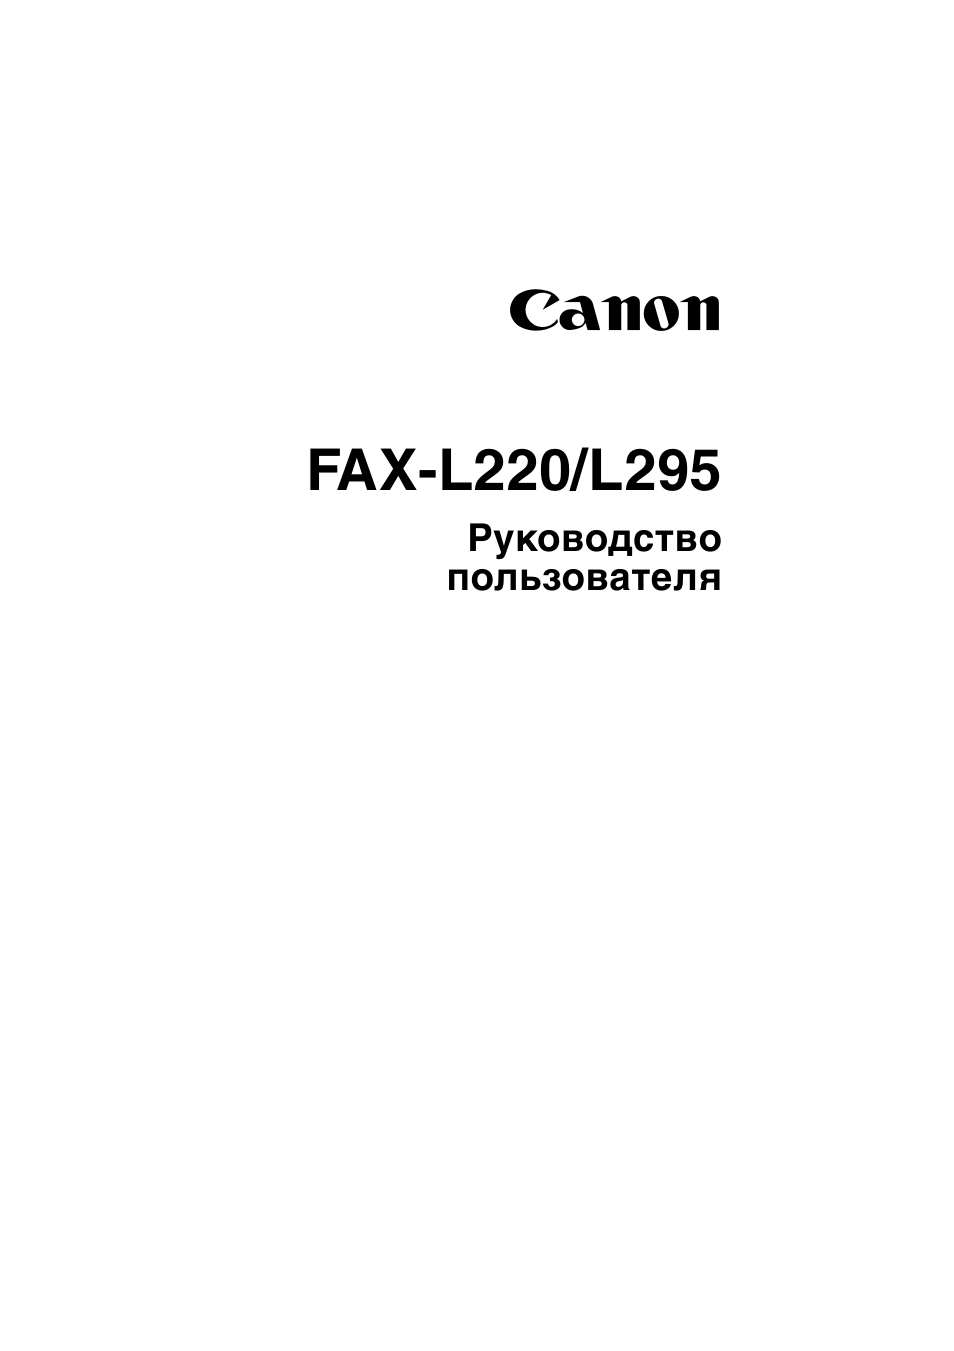 Canon fax l295 инструкция